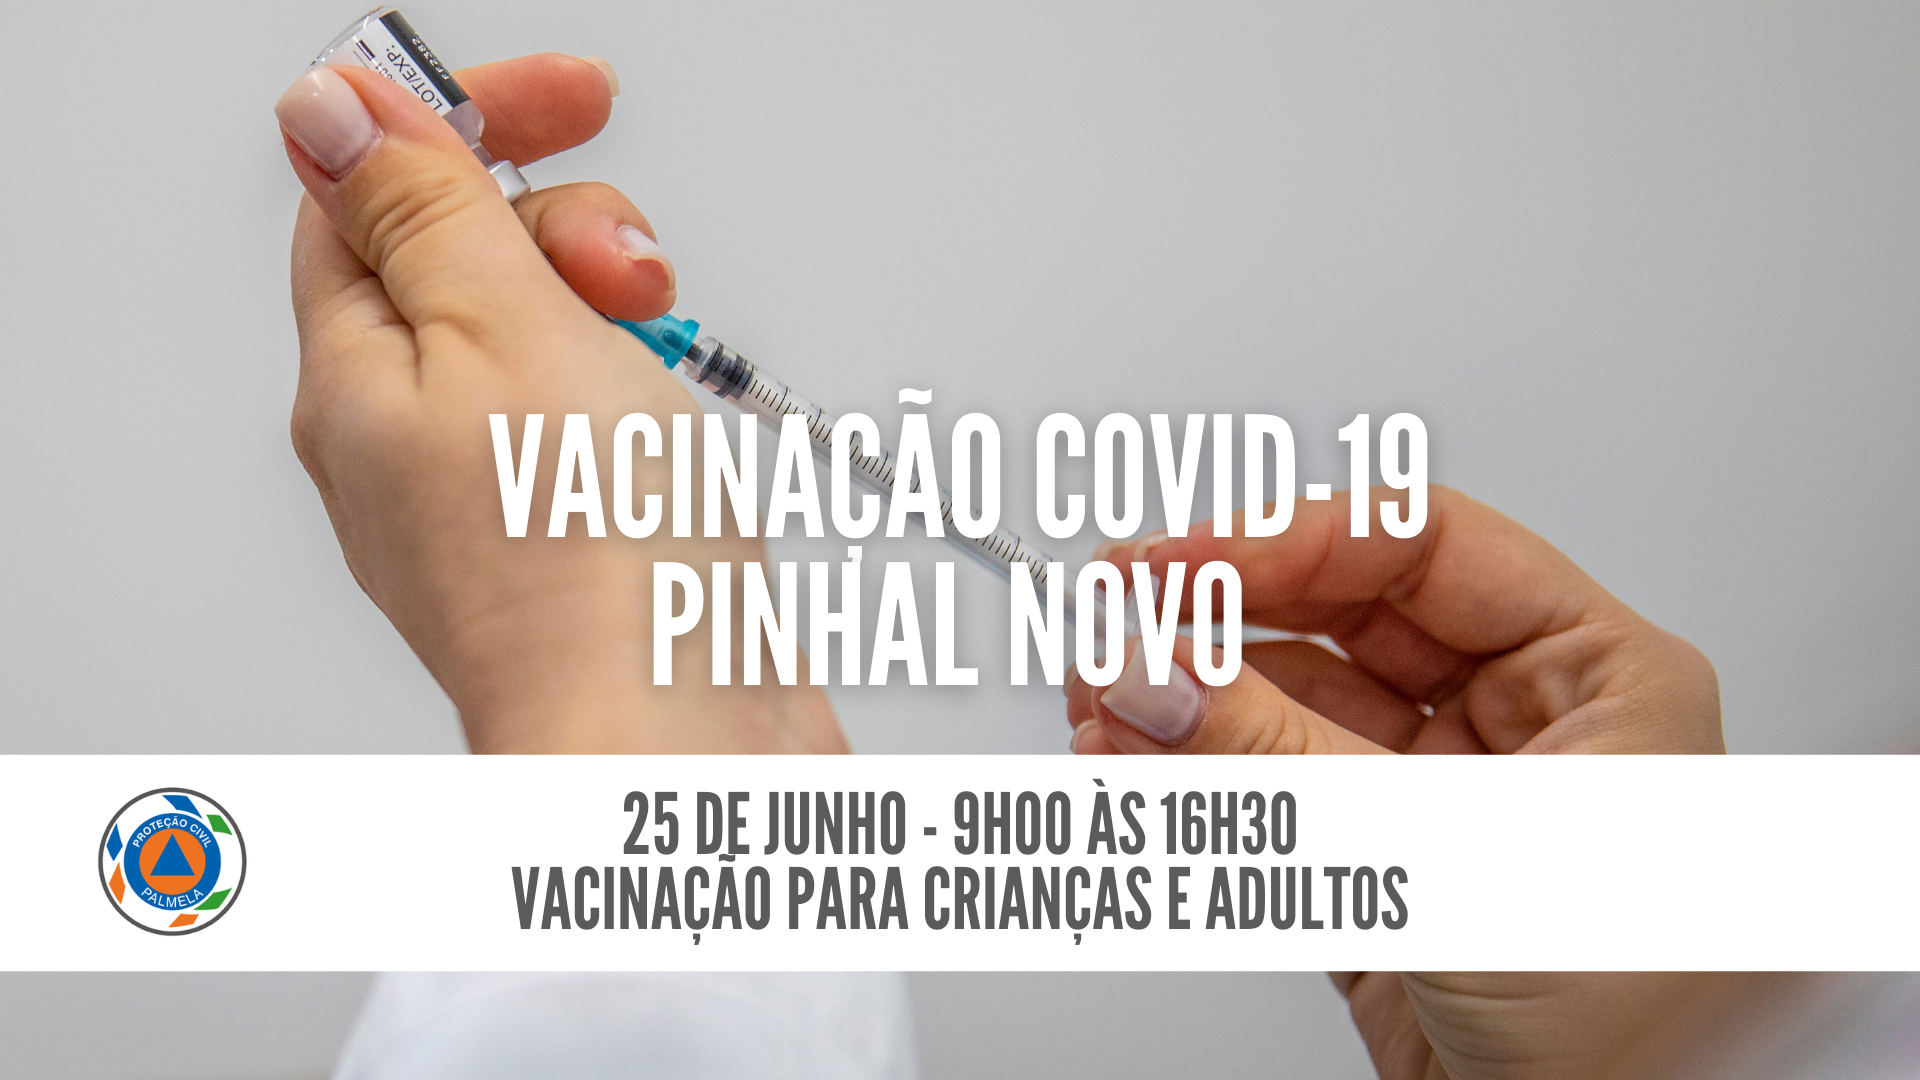 Vacinação de crianças e adultos no CVC/Pinhal Novo – 25 de junho